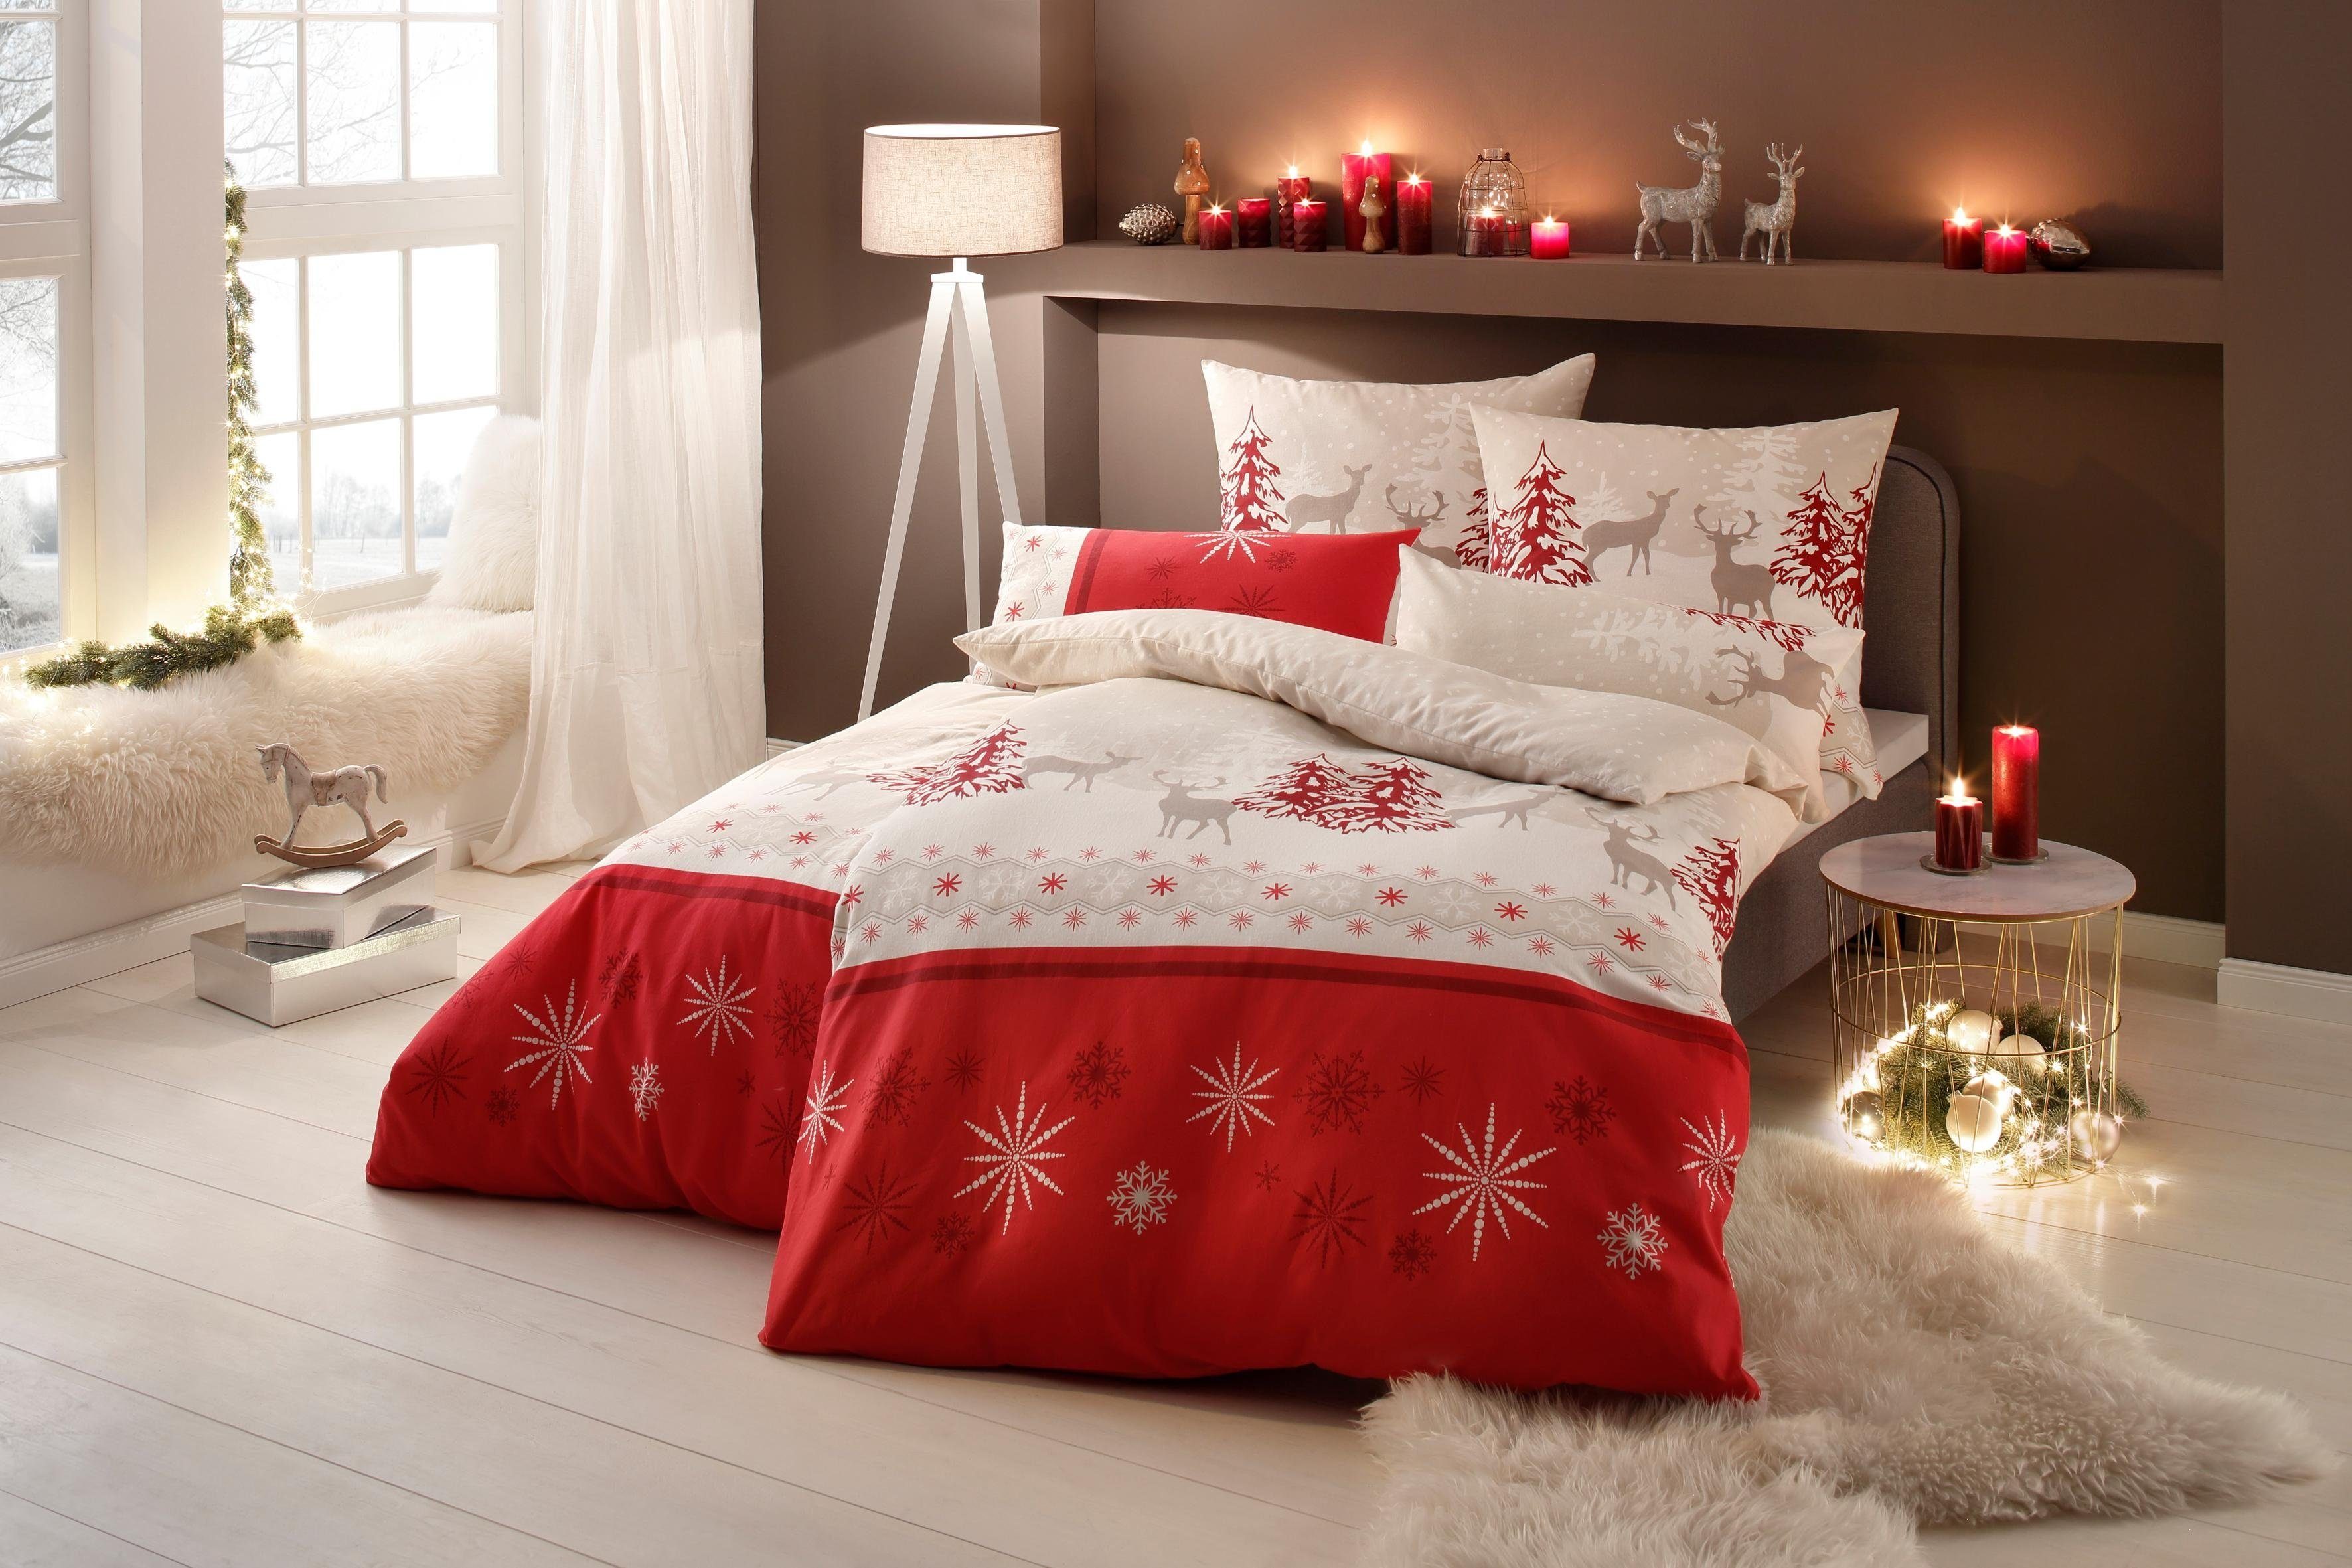 Bettwäsche Venua in Gr. Linon, rot/beige my Weihnachtsbettwäsche cm, oder home, 135x200 155x220 Winterbettwäsche, teilig, 2